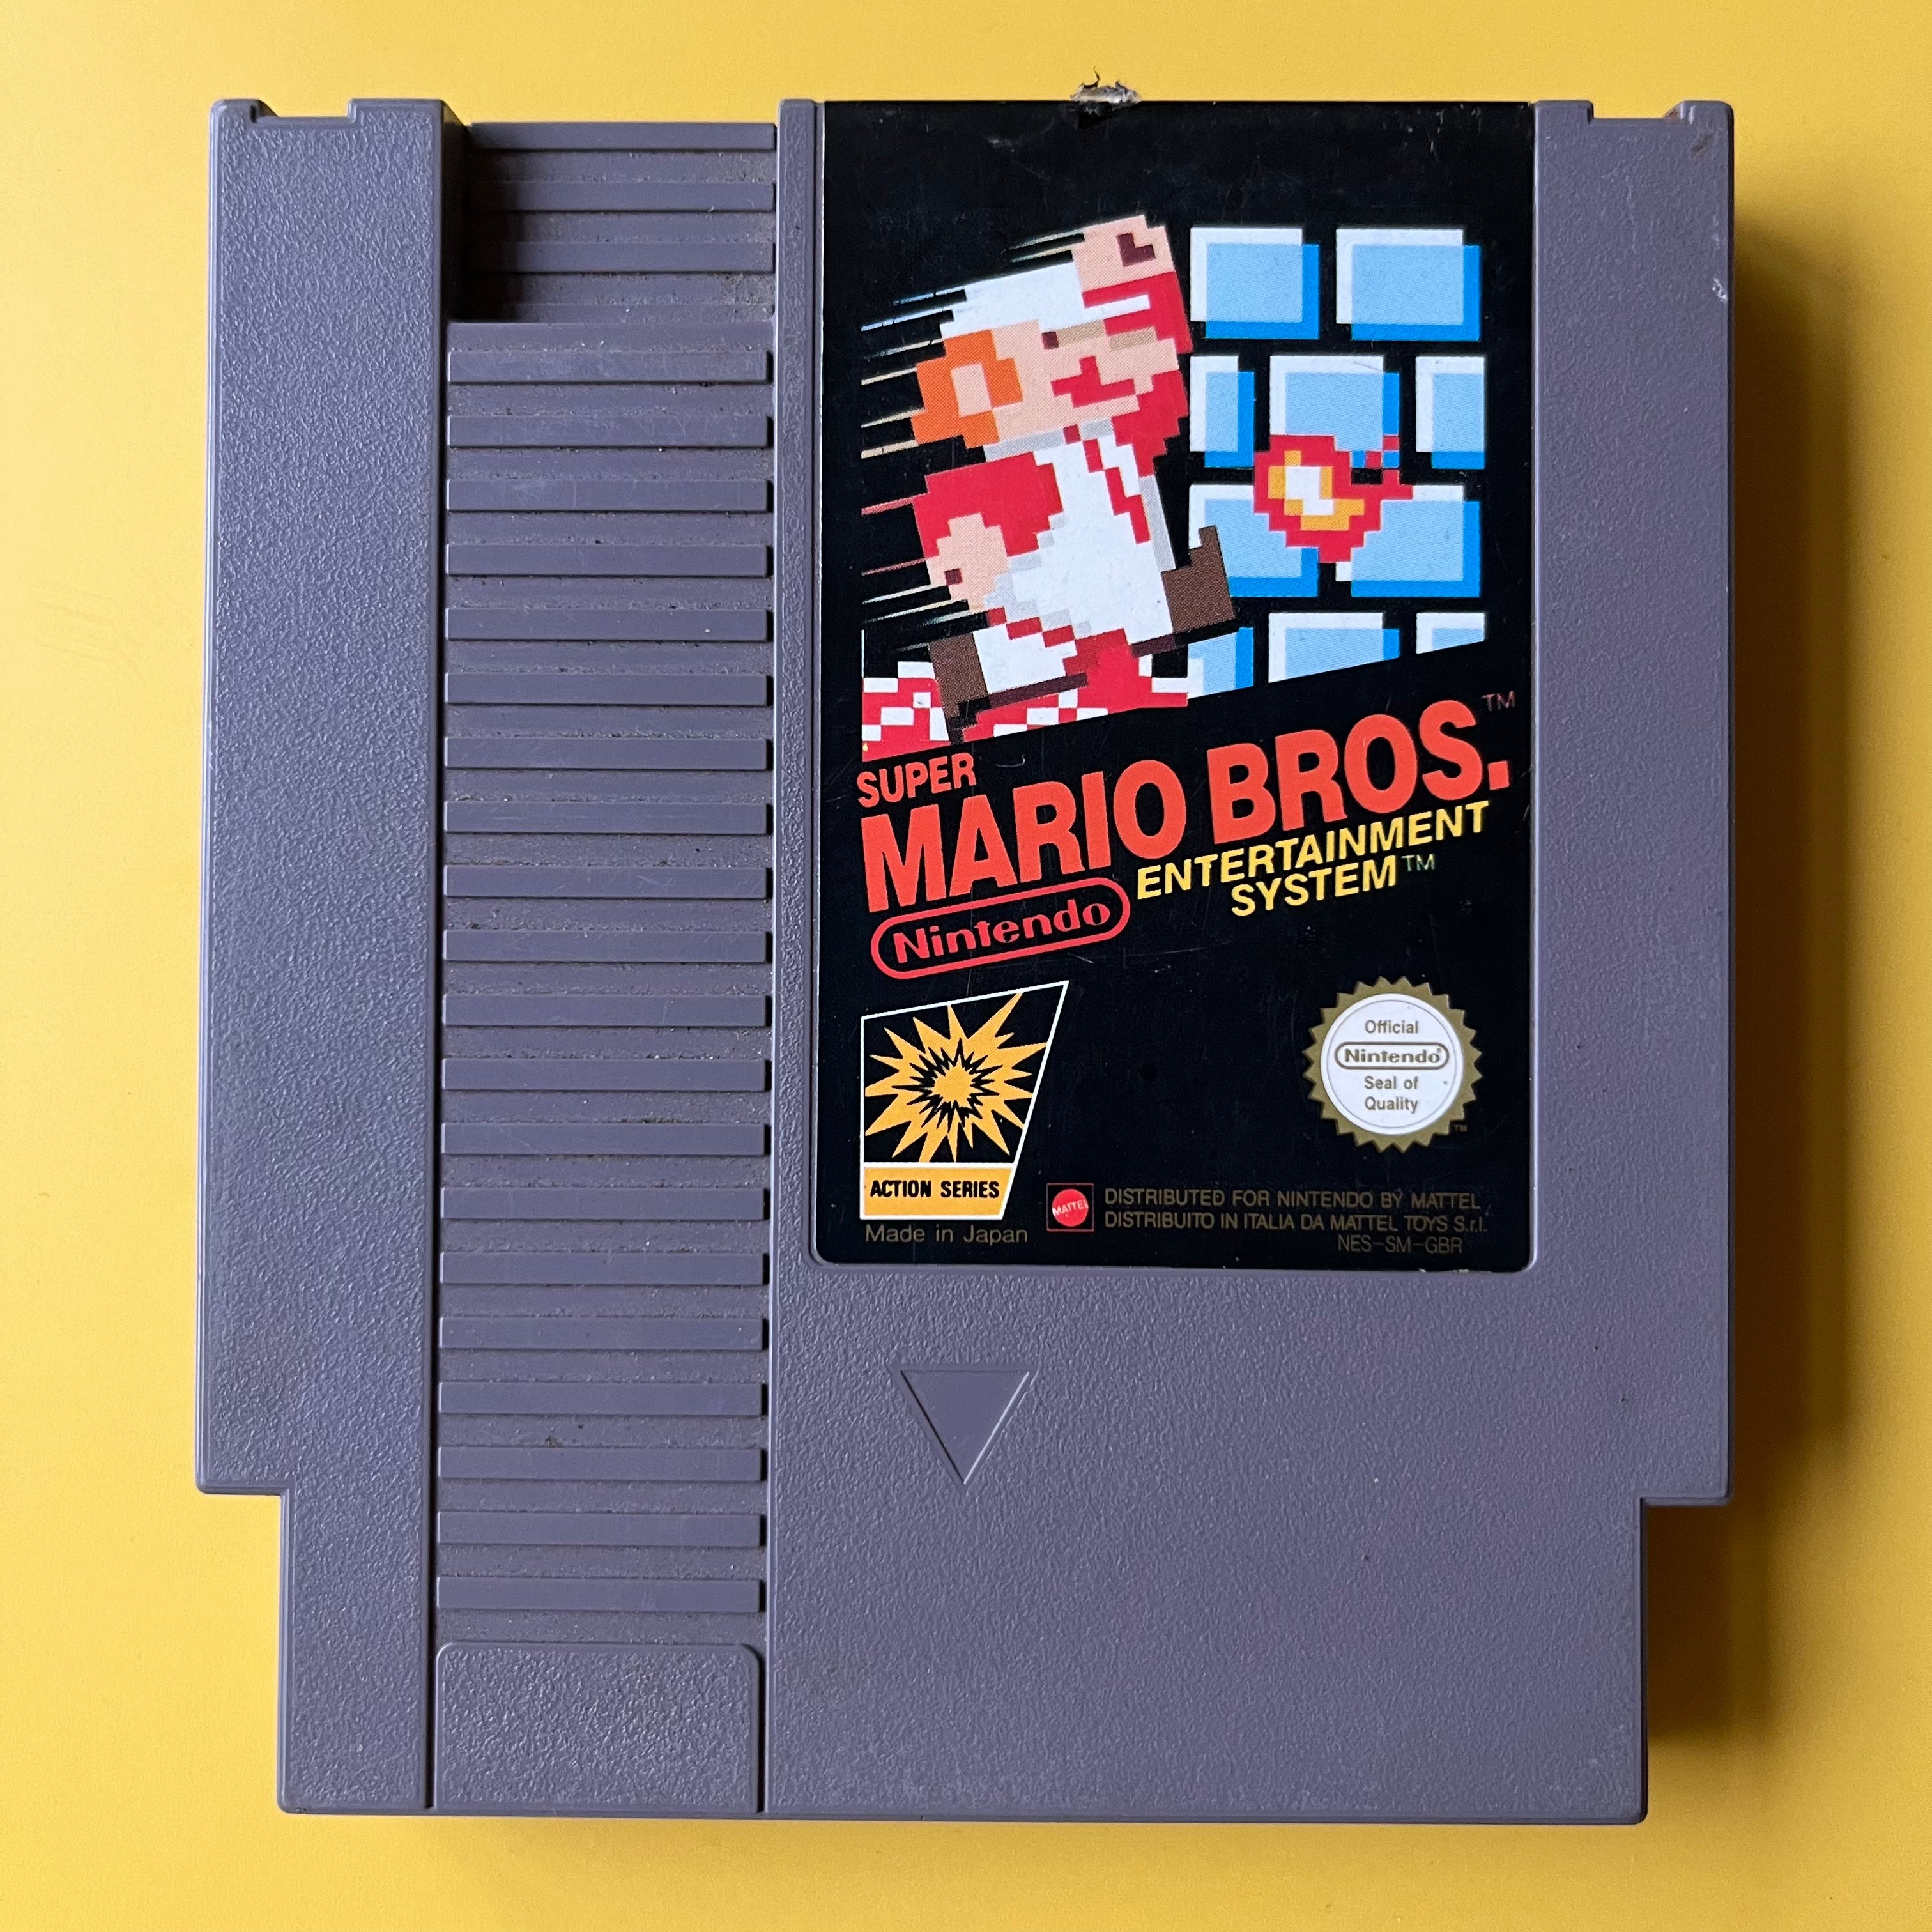 NES - Super Mario Bros.